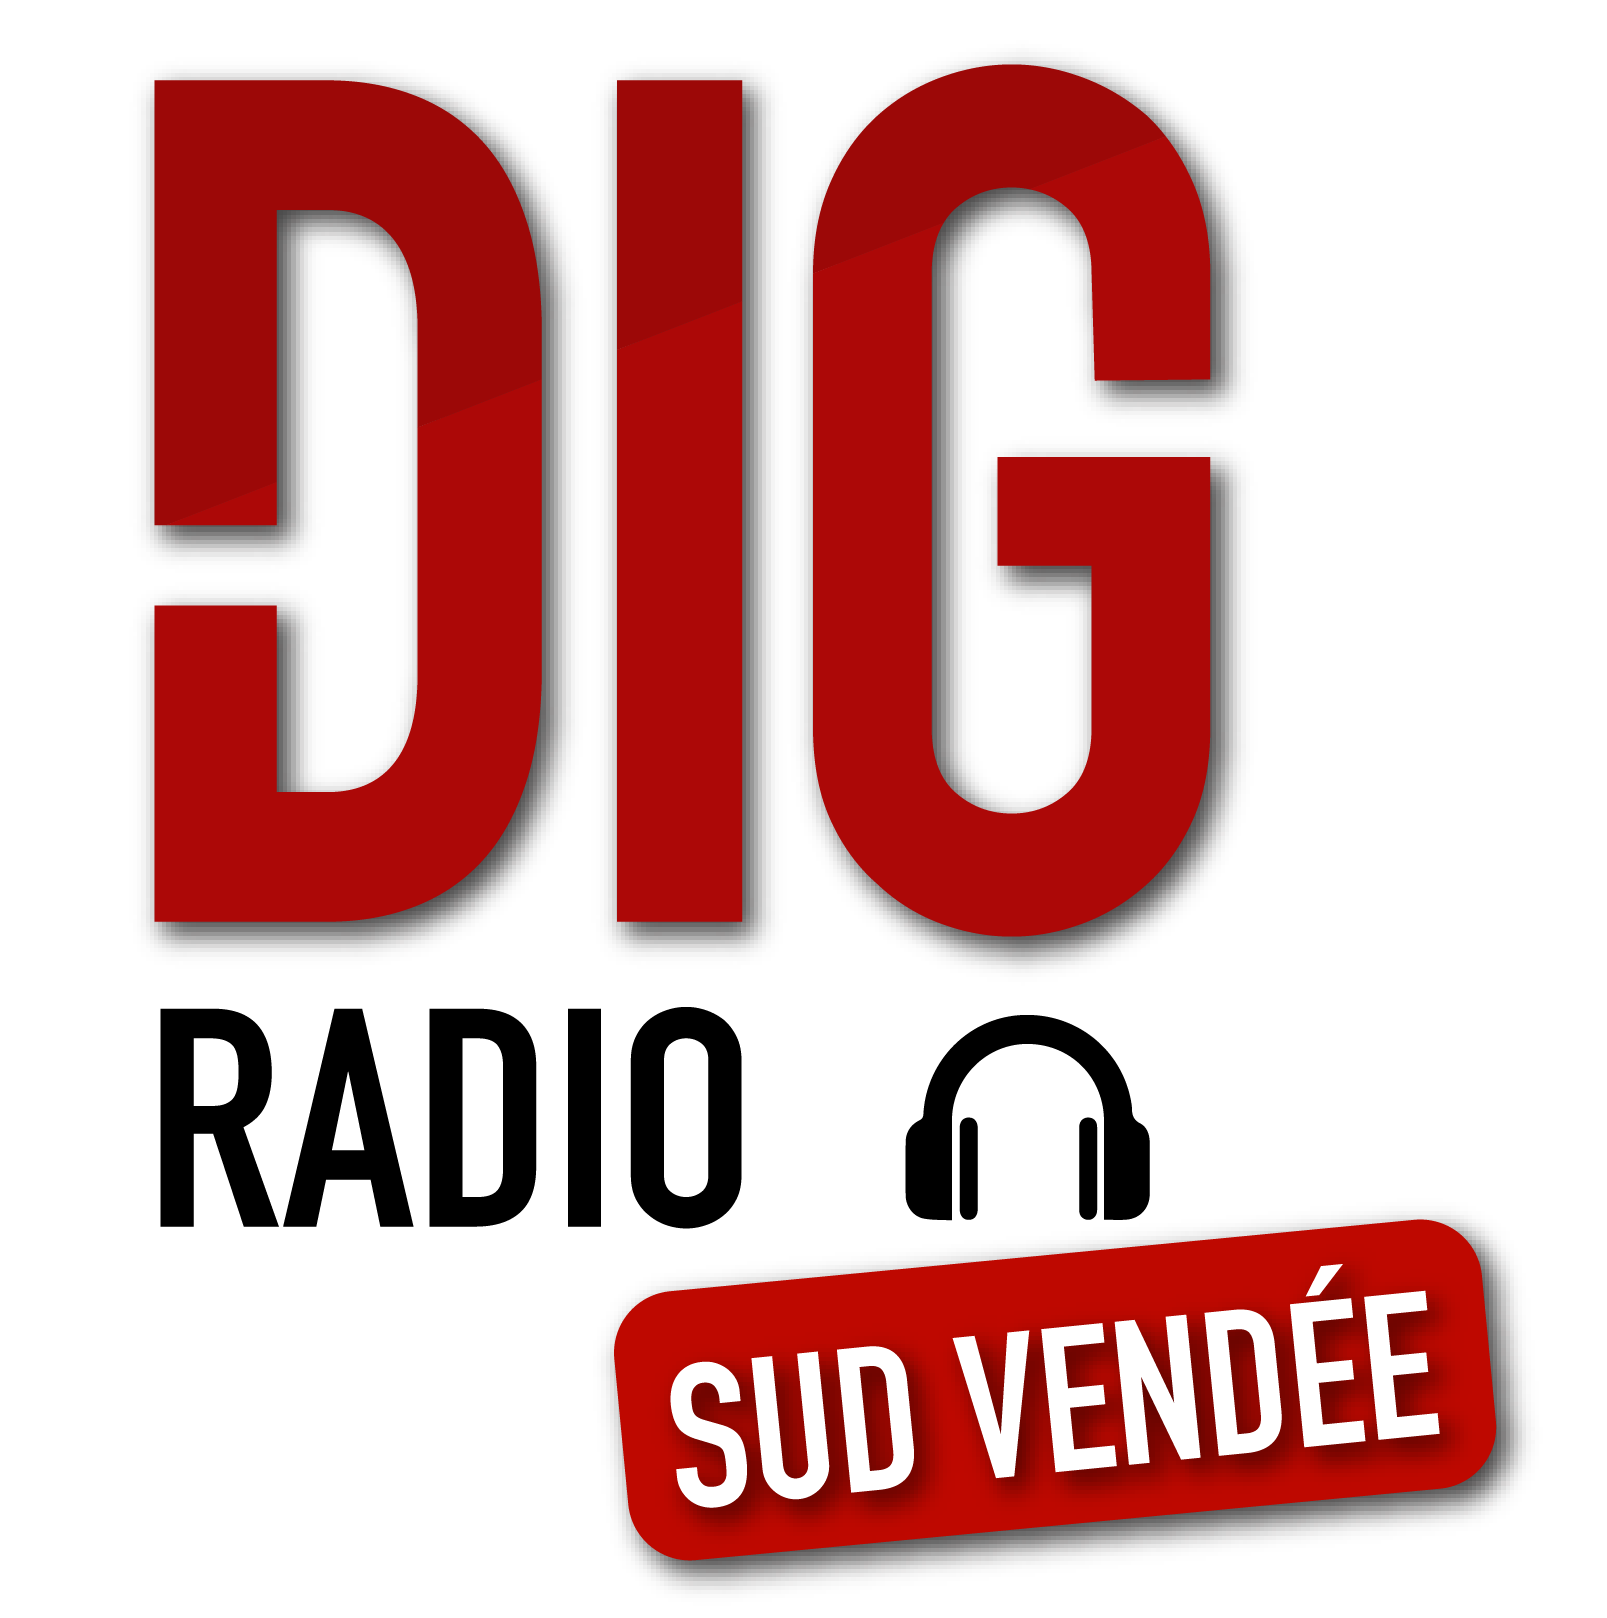 Dig Radio Sud Vendée